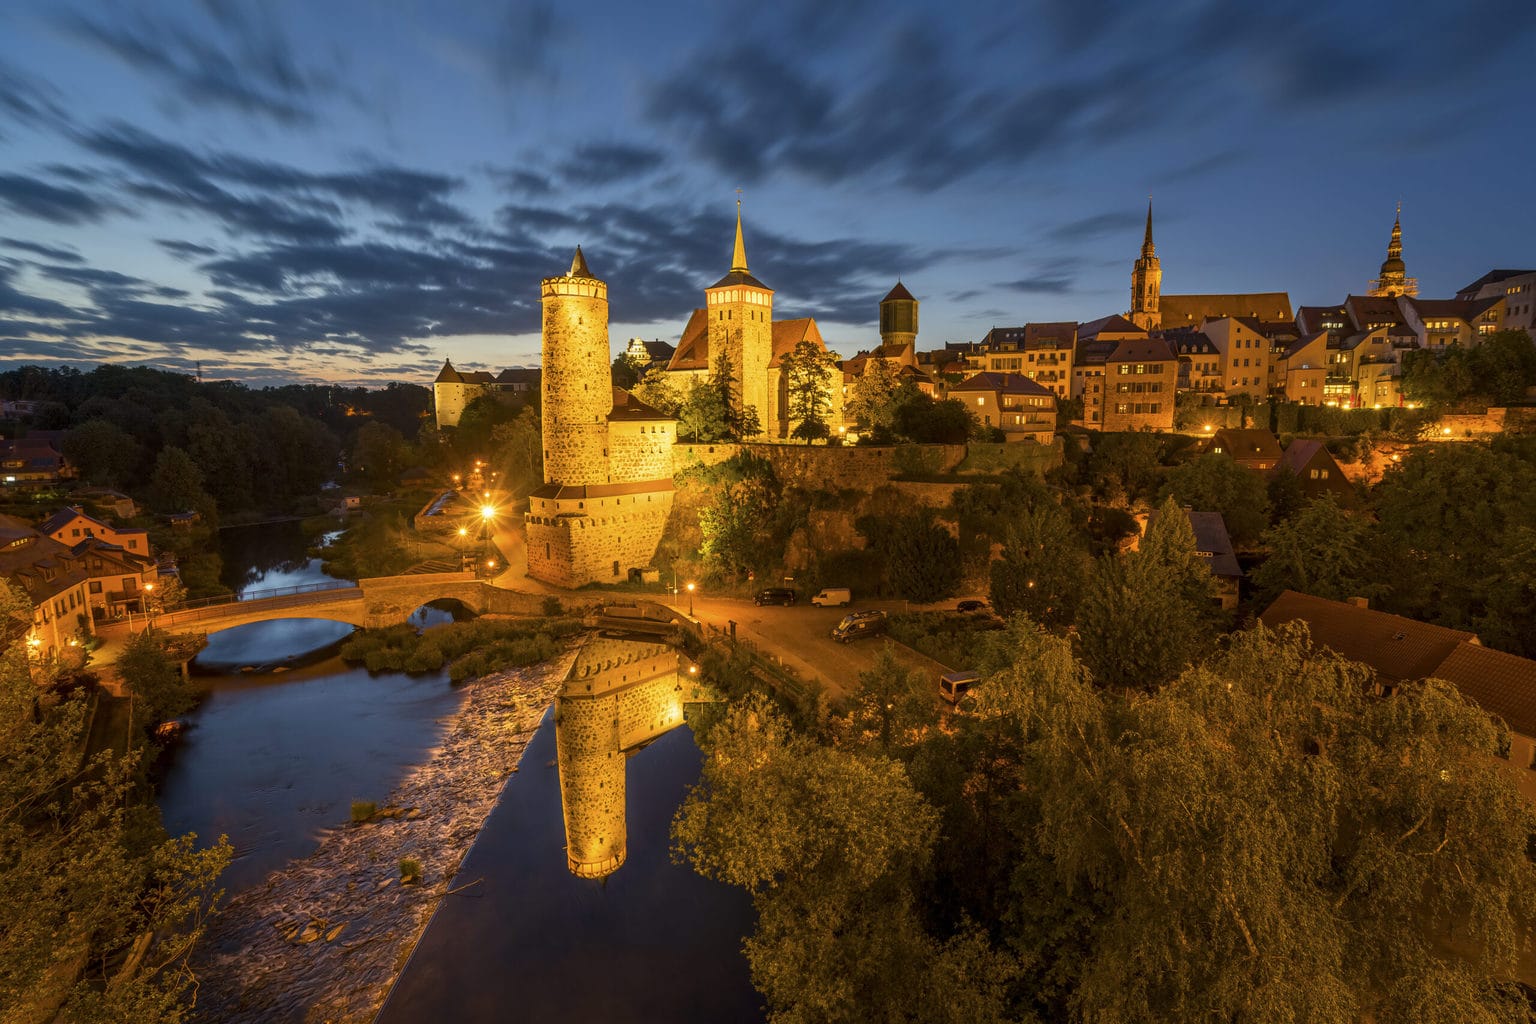 Avondschemering in de Saksische stad Bautzen met kasteel